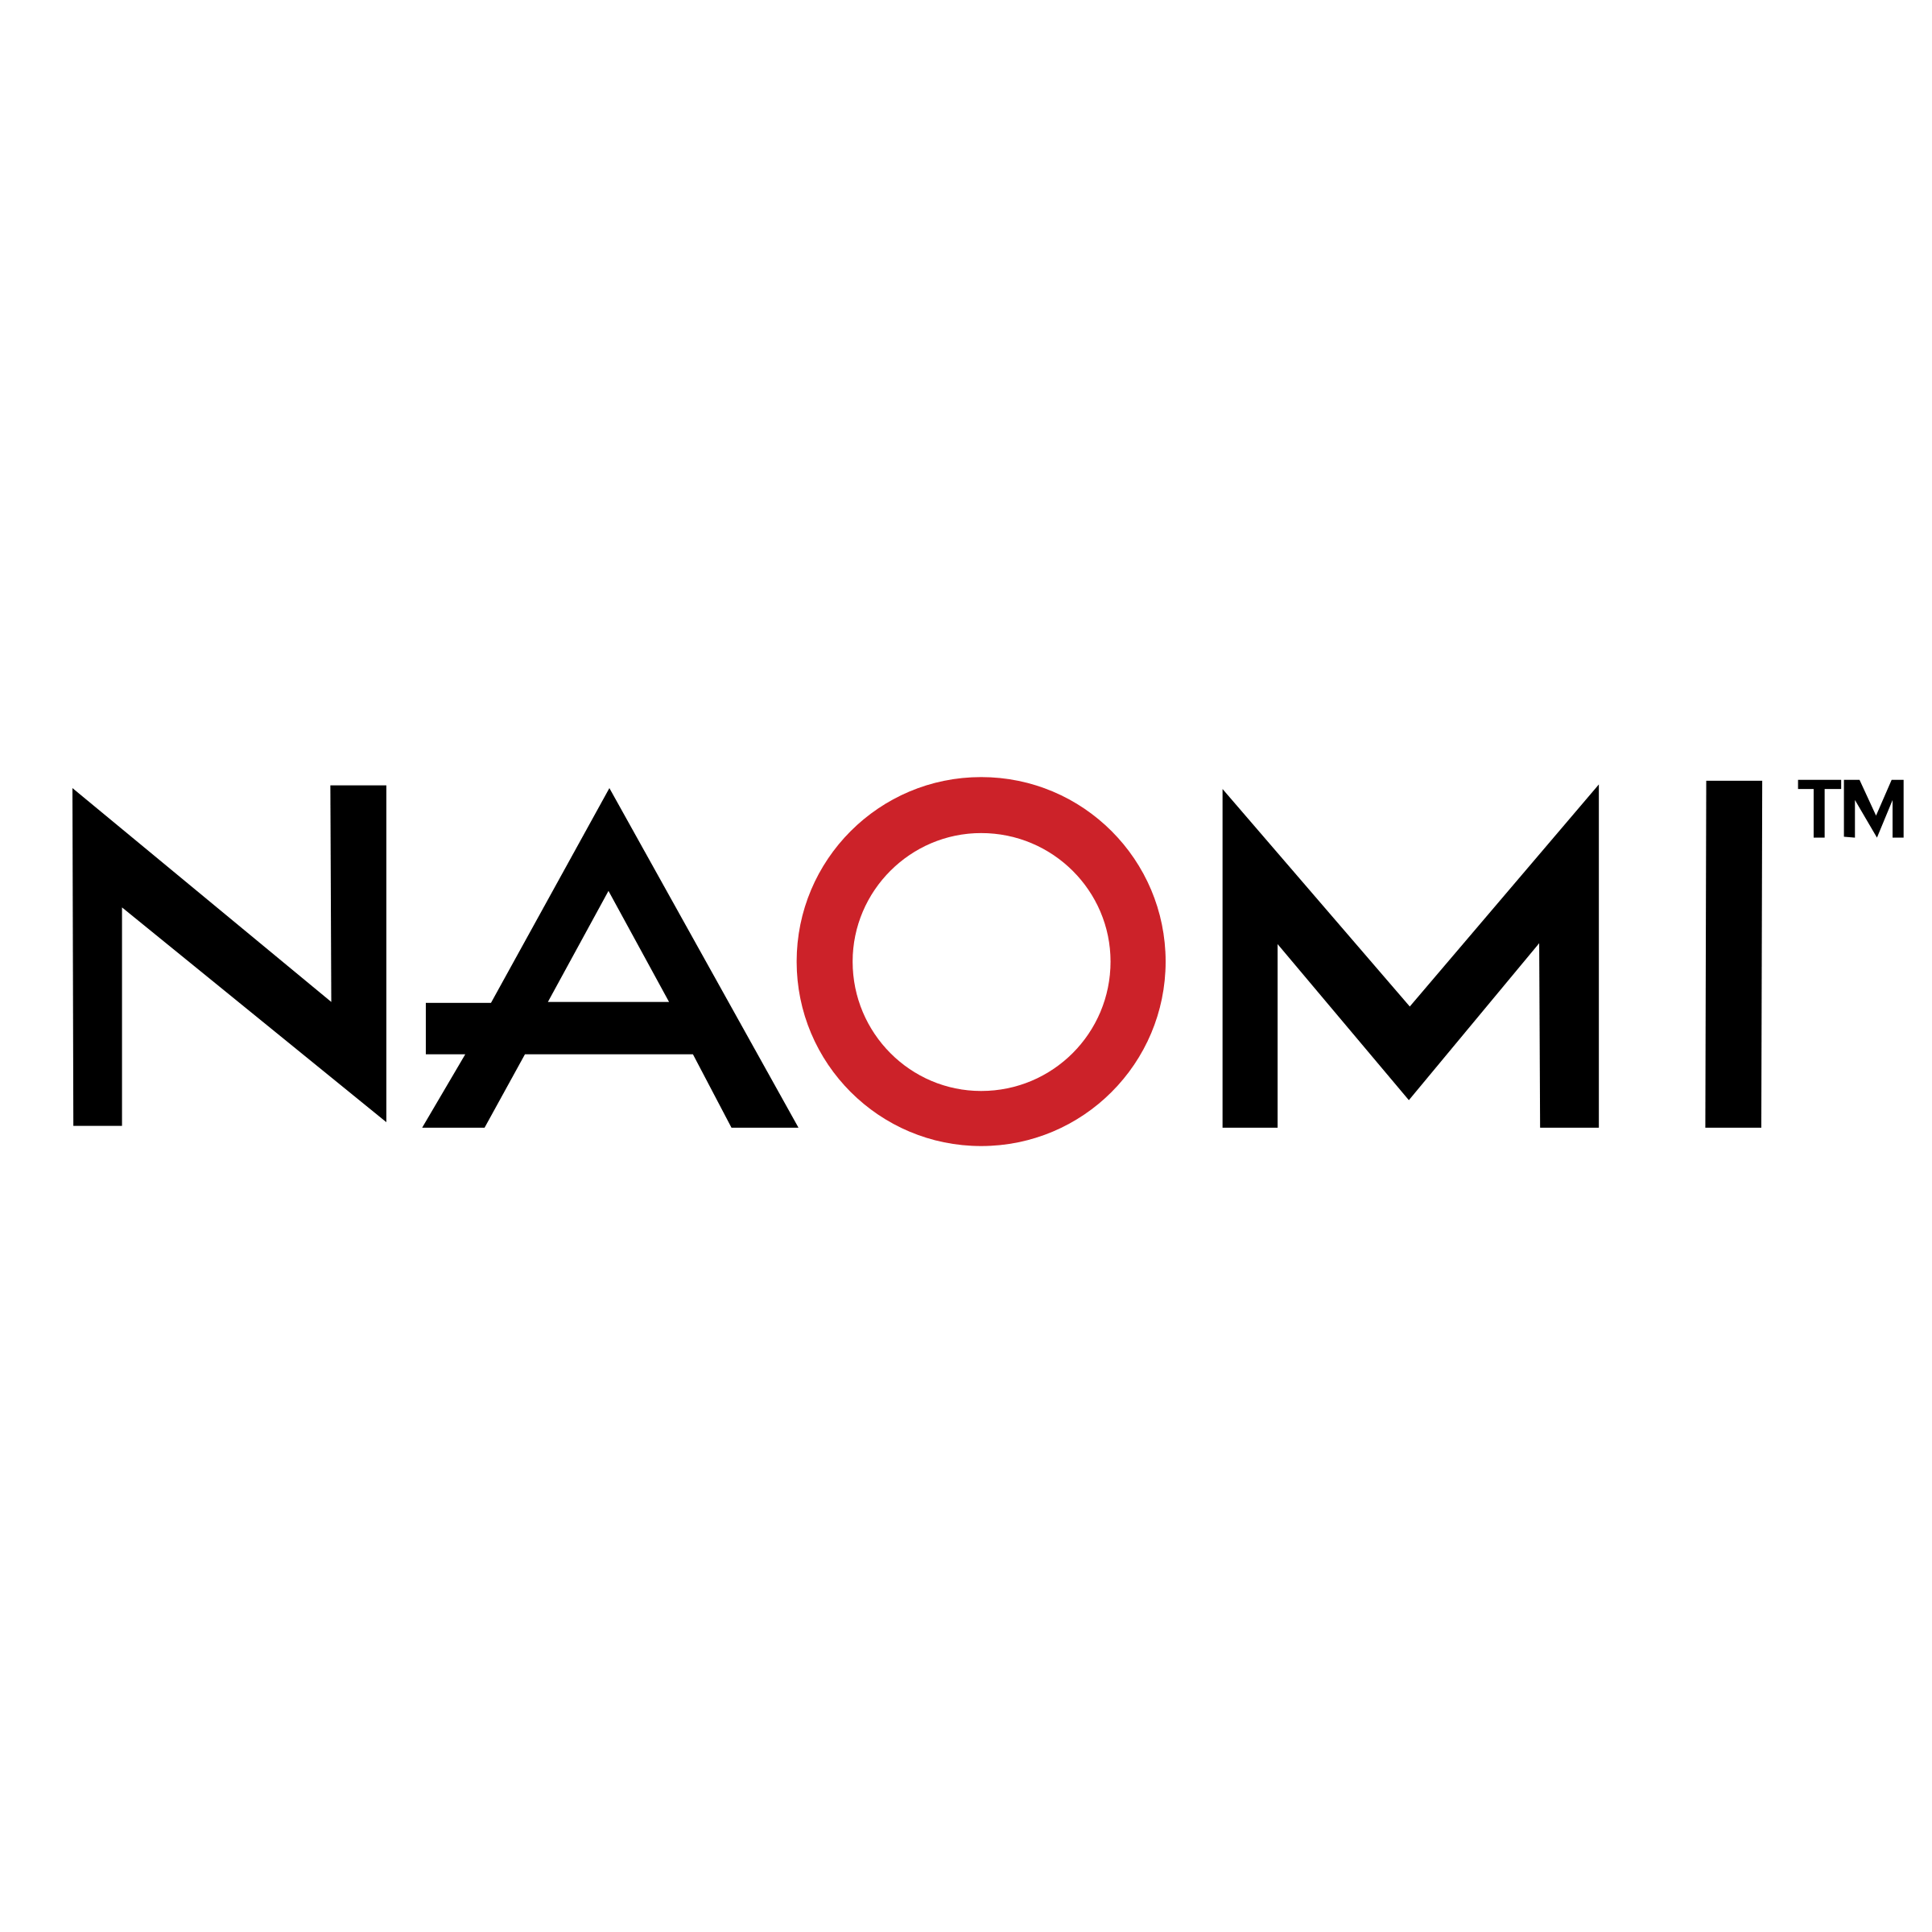 Naomi Logo - Naomi Logo PNG Transparent & SVG Vector - Freebie Supply